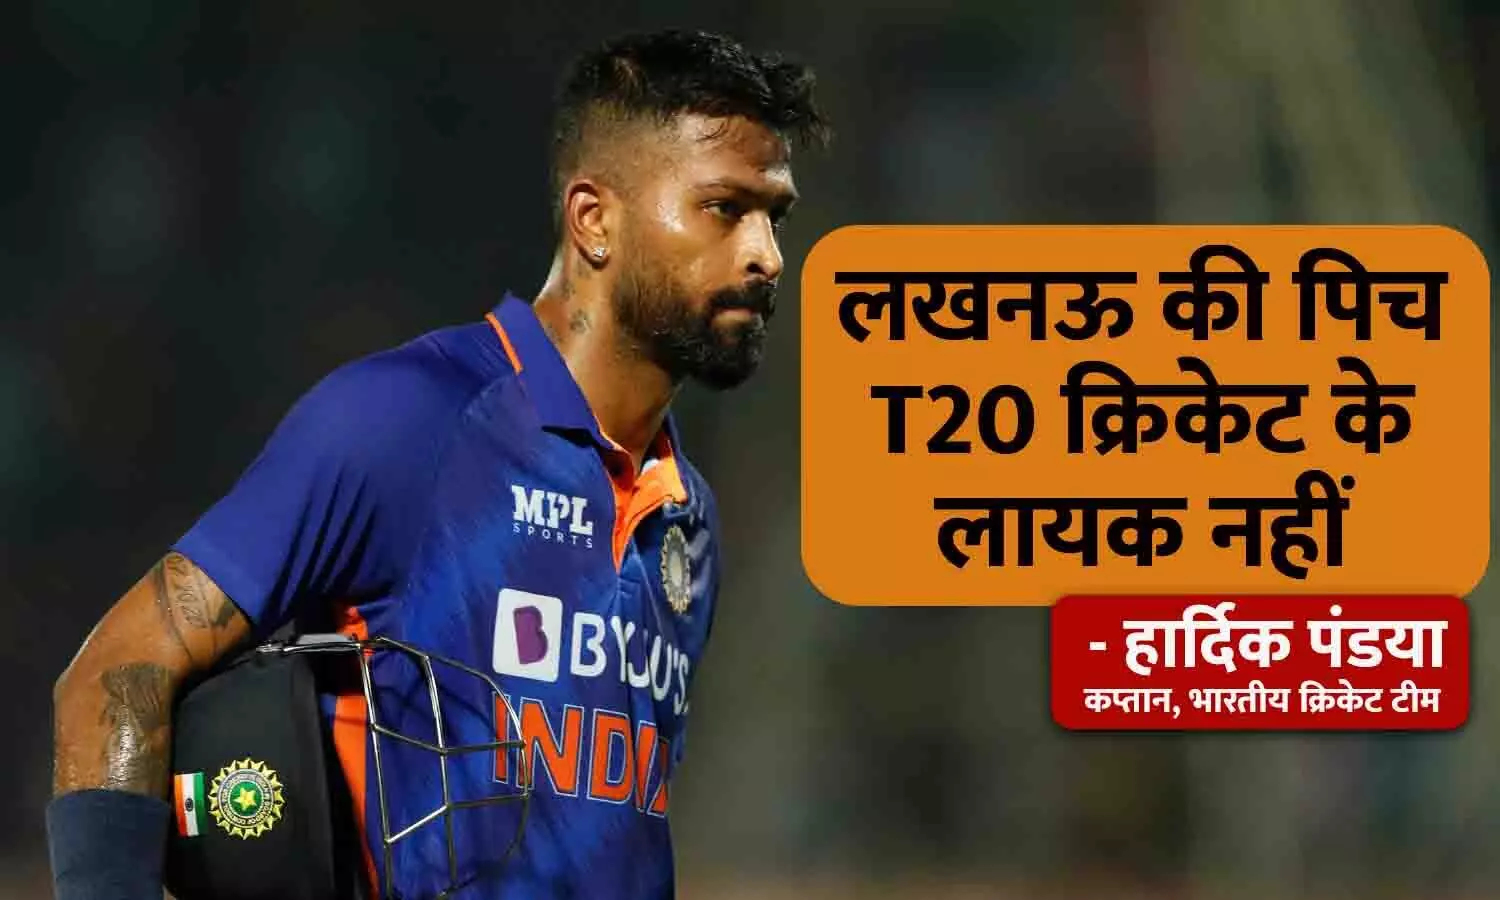 IND Vs NZ: लखनऊ की पिच पर फूटा टीम इंडिया के टी20 कप्तान का गुस्सा, हार्दिक ने कहा - यह पिच T20 क्रिकेट लायक नहीं